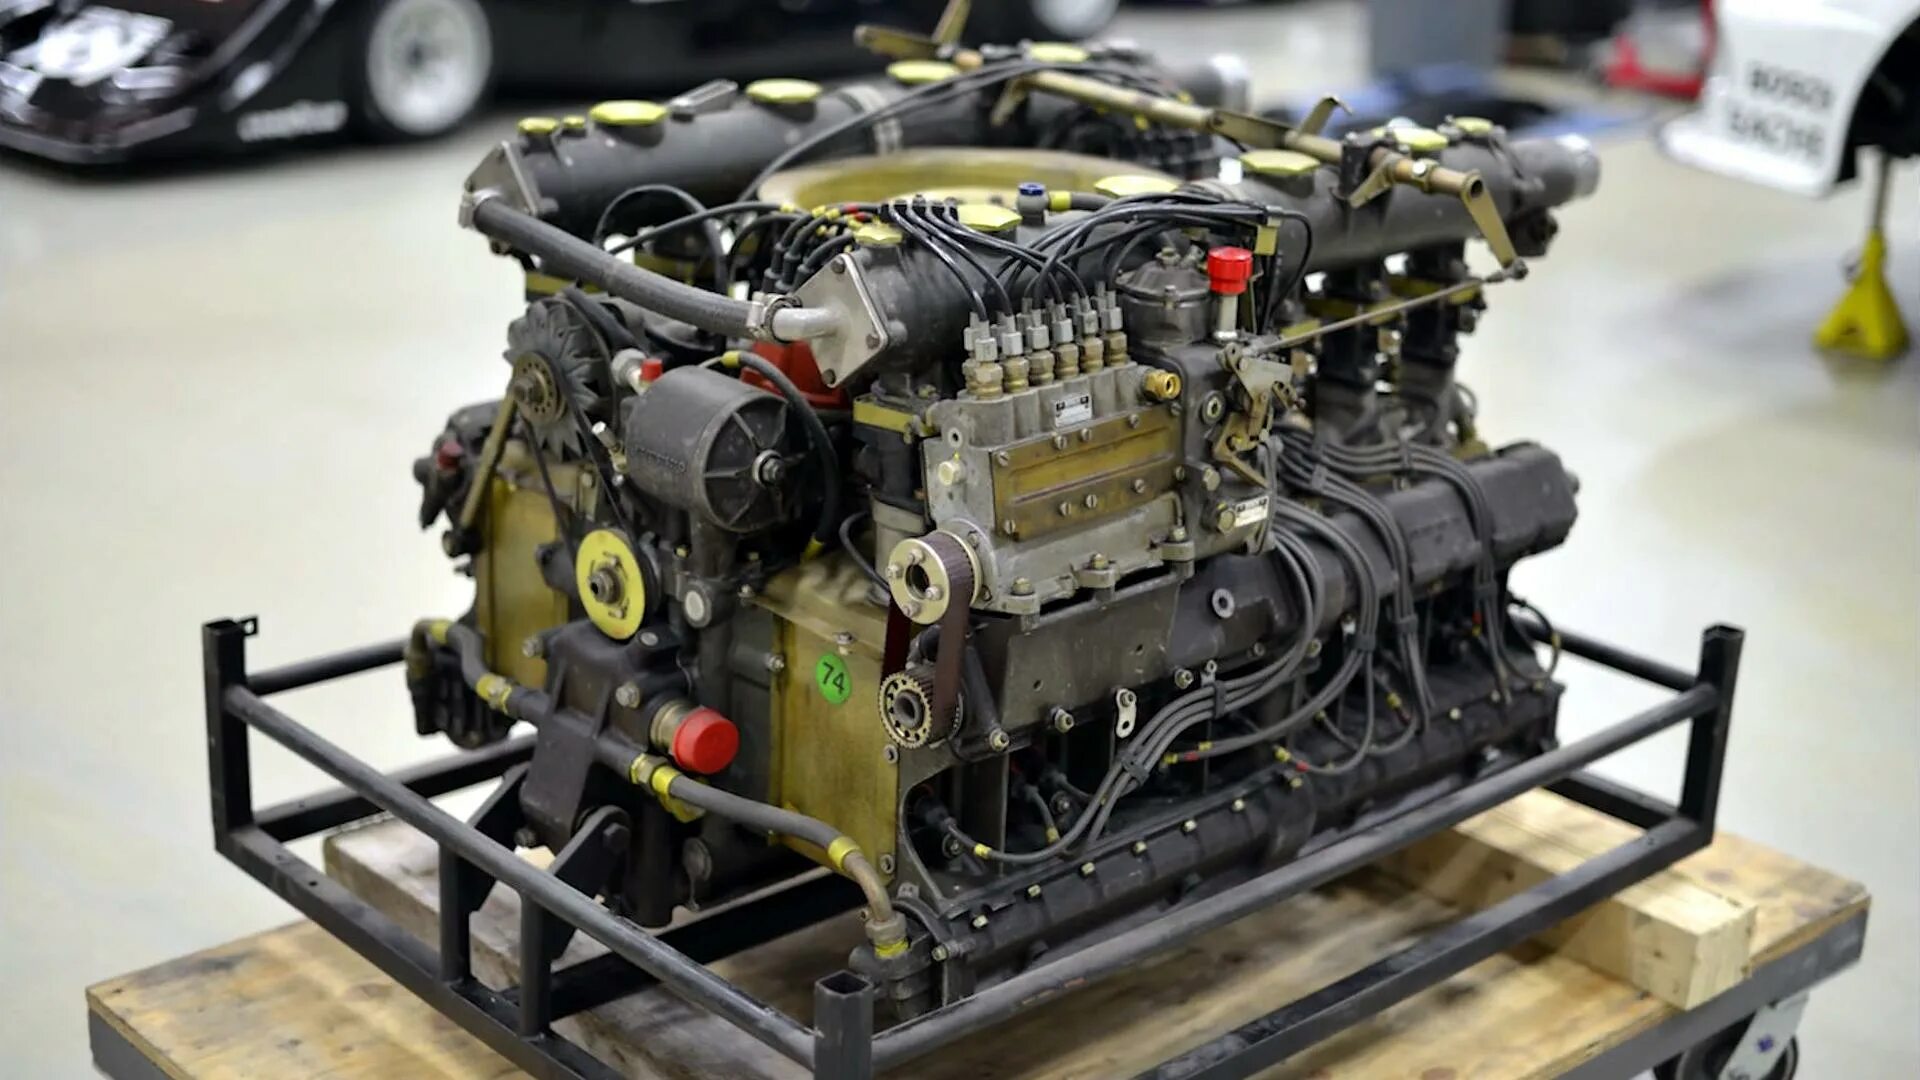 Porsche 917 engine. Porsche 917 мотор. Двигатель Porsche Deutz Typ 212. Порше 917 движок. Flat engine